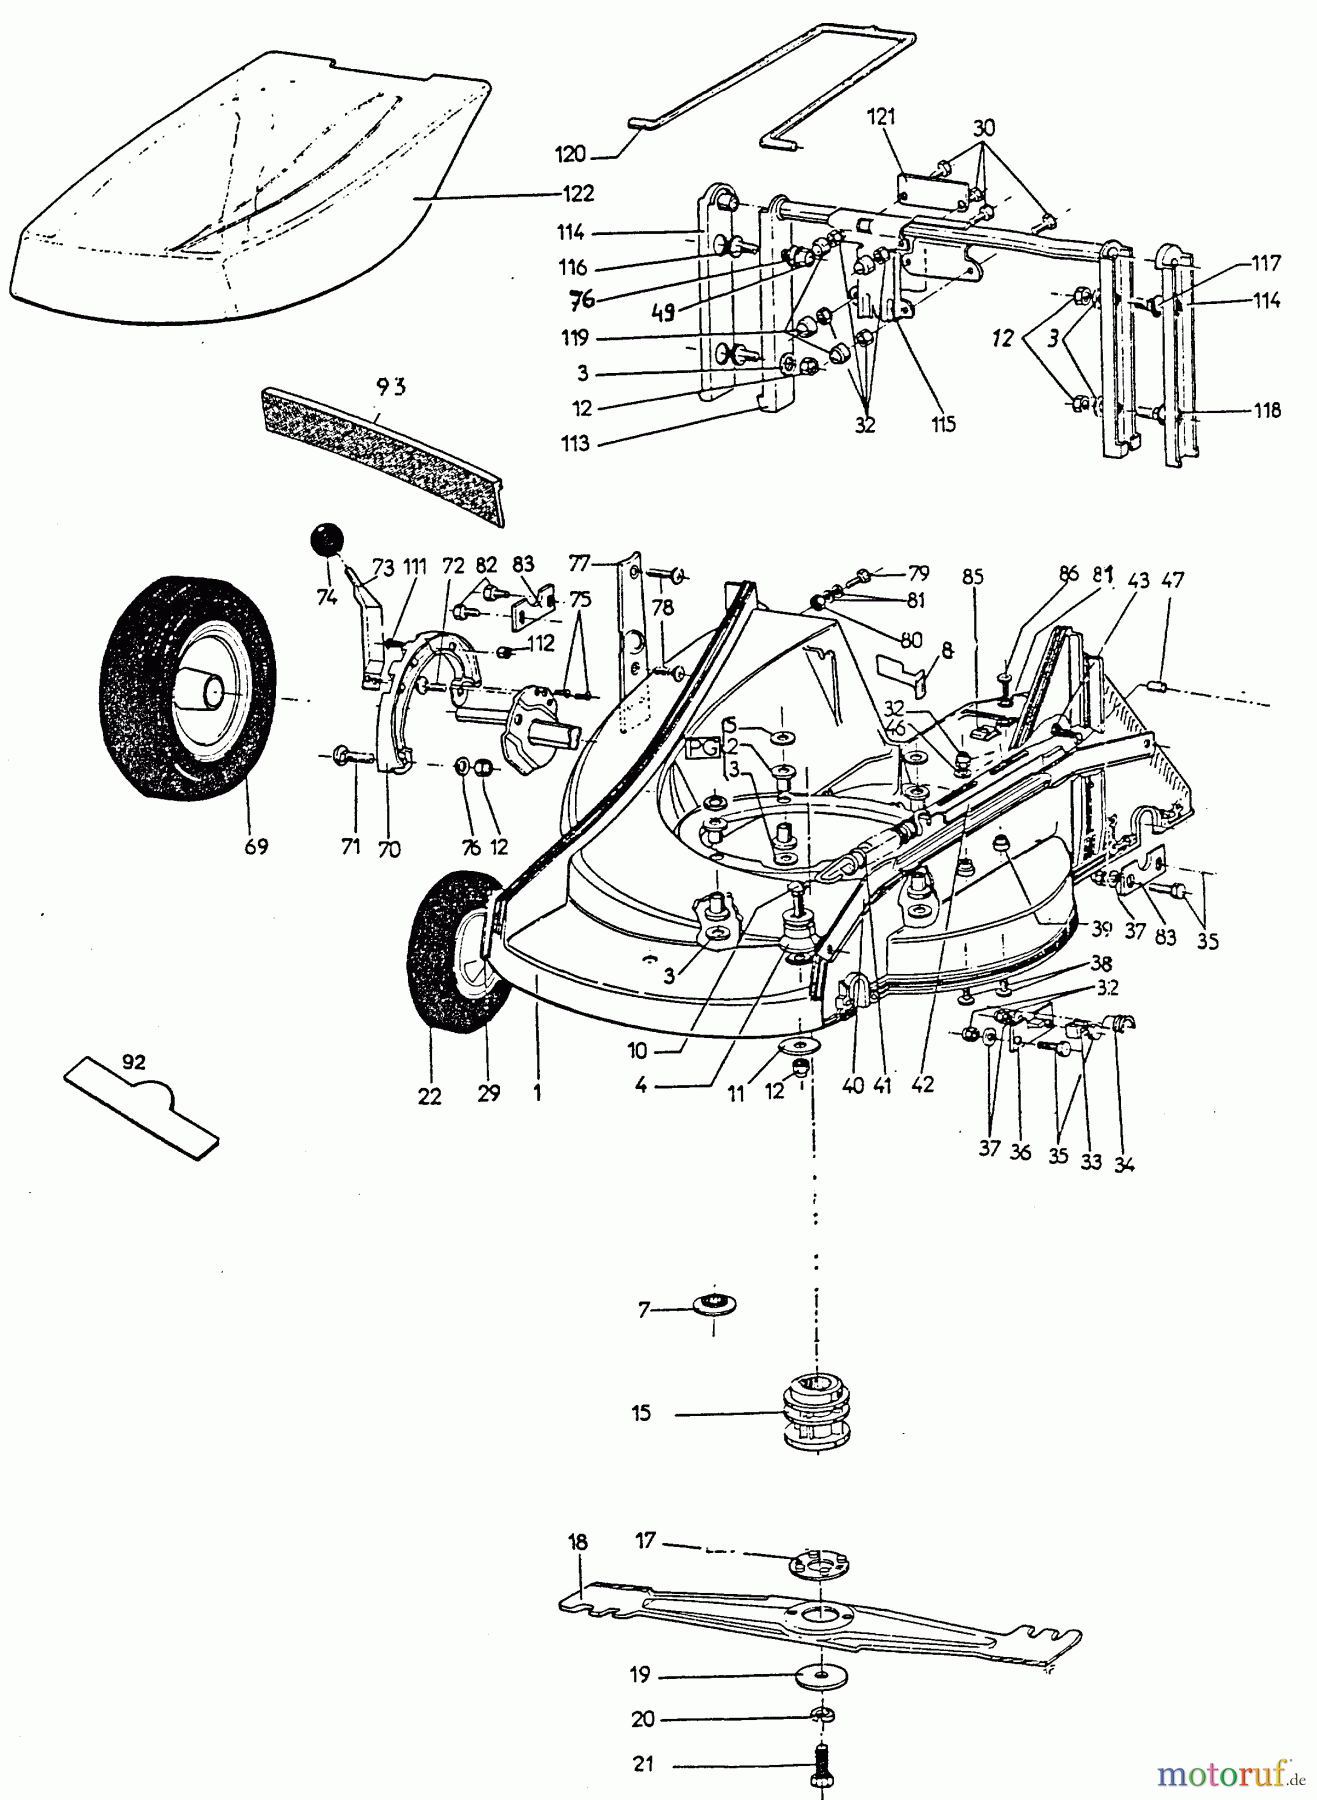  Wolf-Garten Petrol mower 6.46 B 6946580 Series A  (1996) Blade, Clutch, Wheels